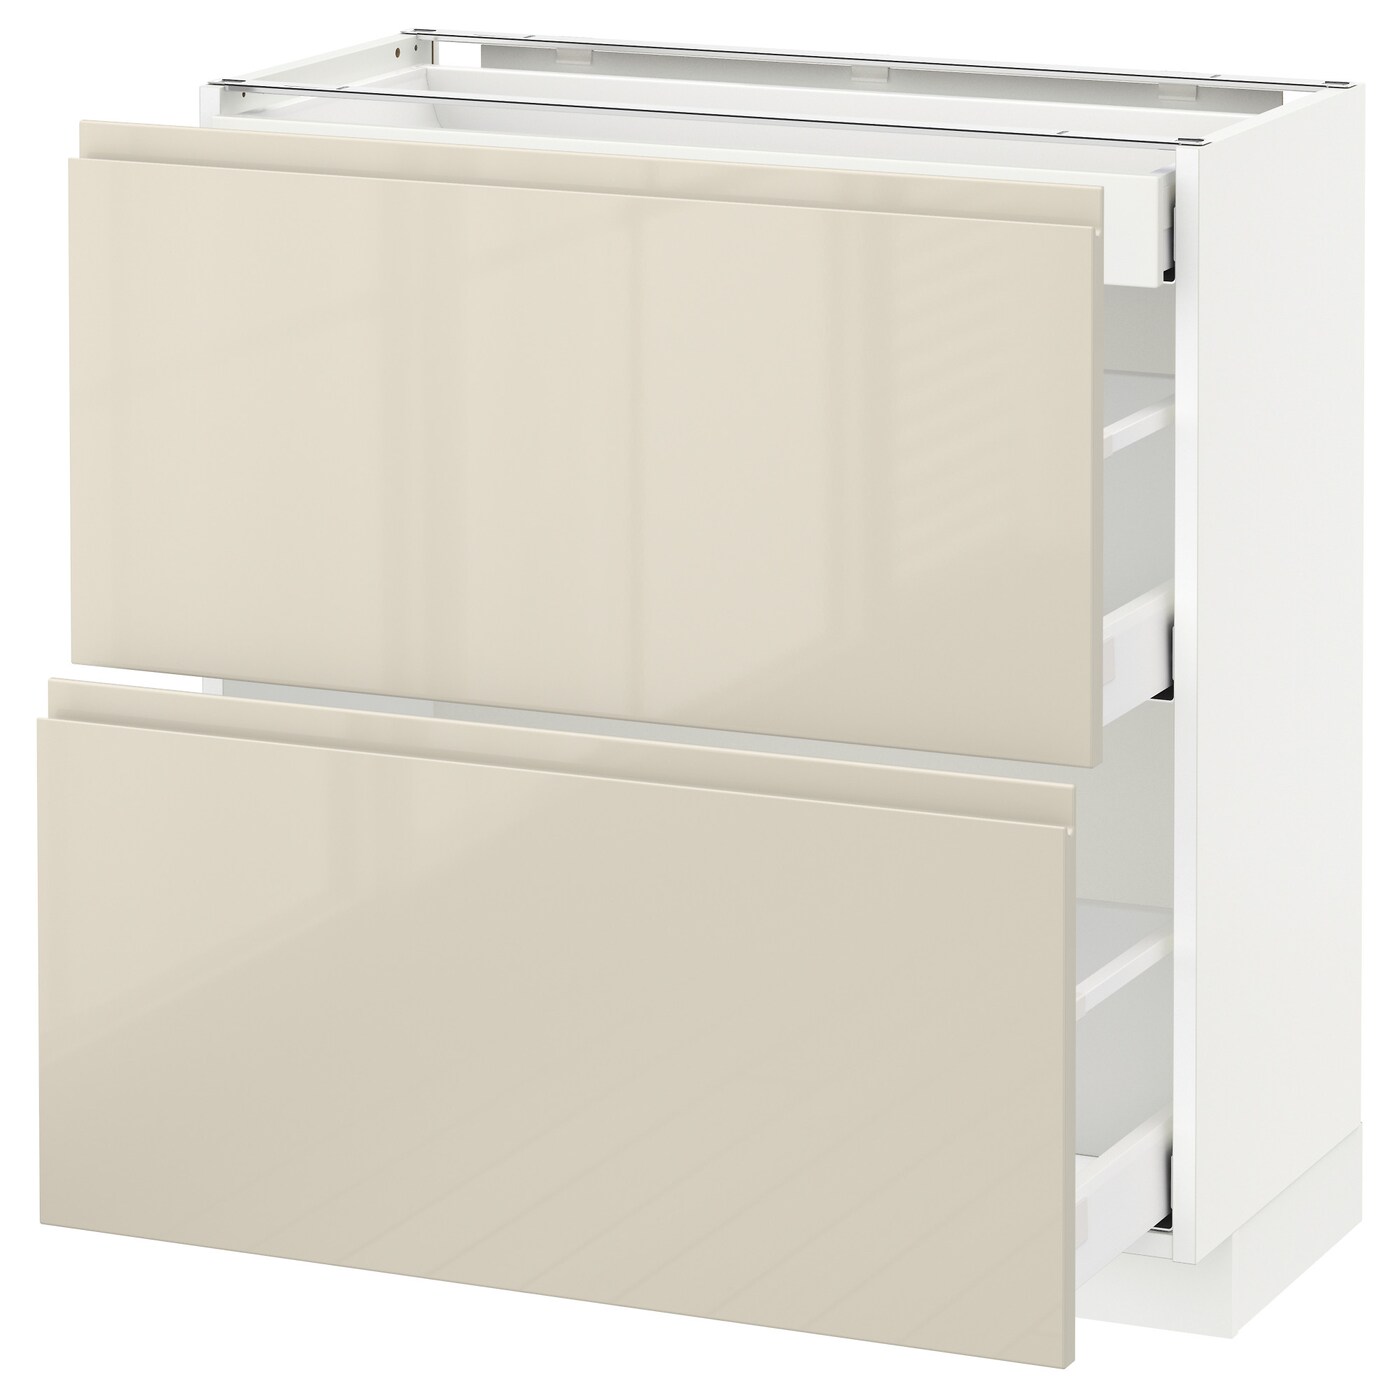 Напольный кухонный шкаф  - IKEA METOD MAXIMERA, 88x39x80см, белый/бежевый, МЕТОД МАКСИМЕРА ИКЕА